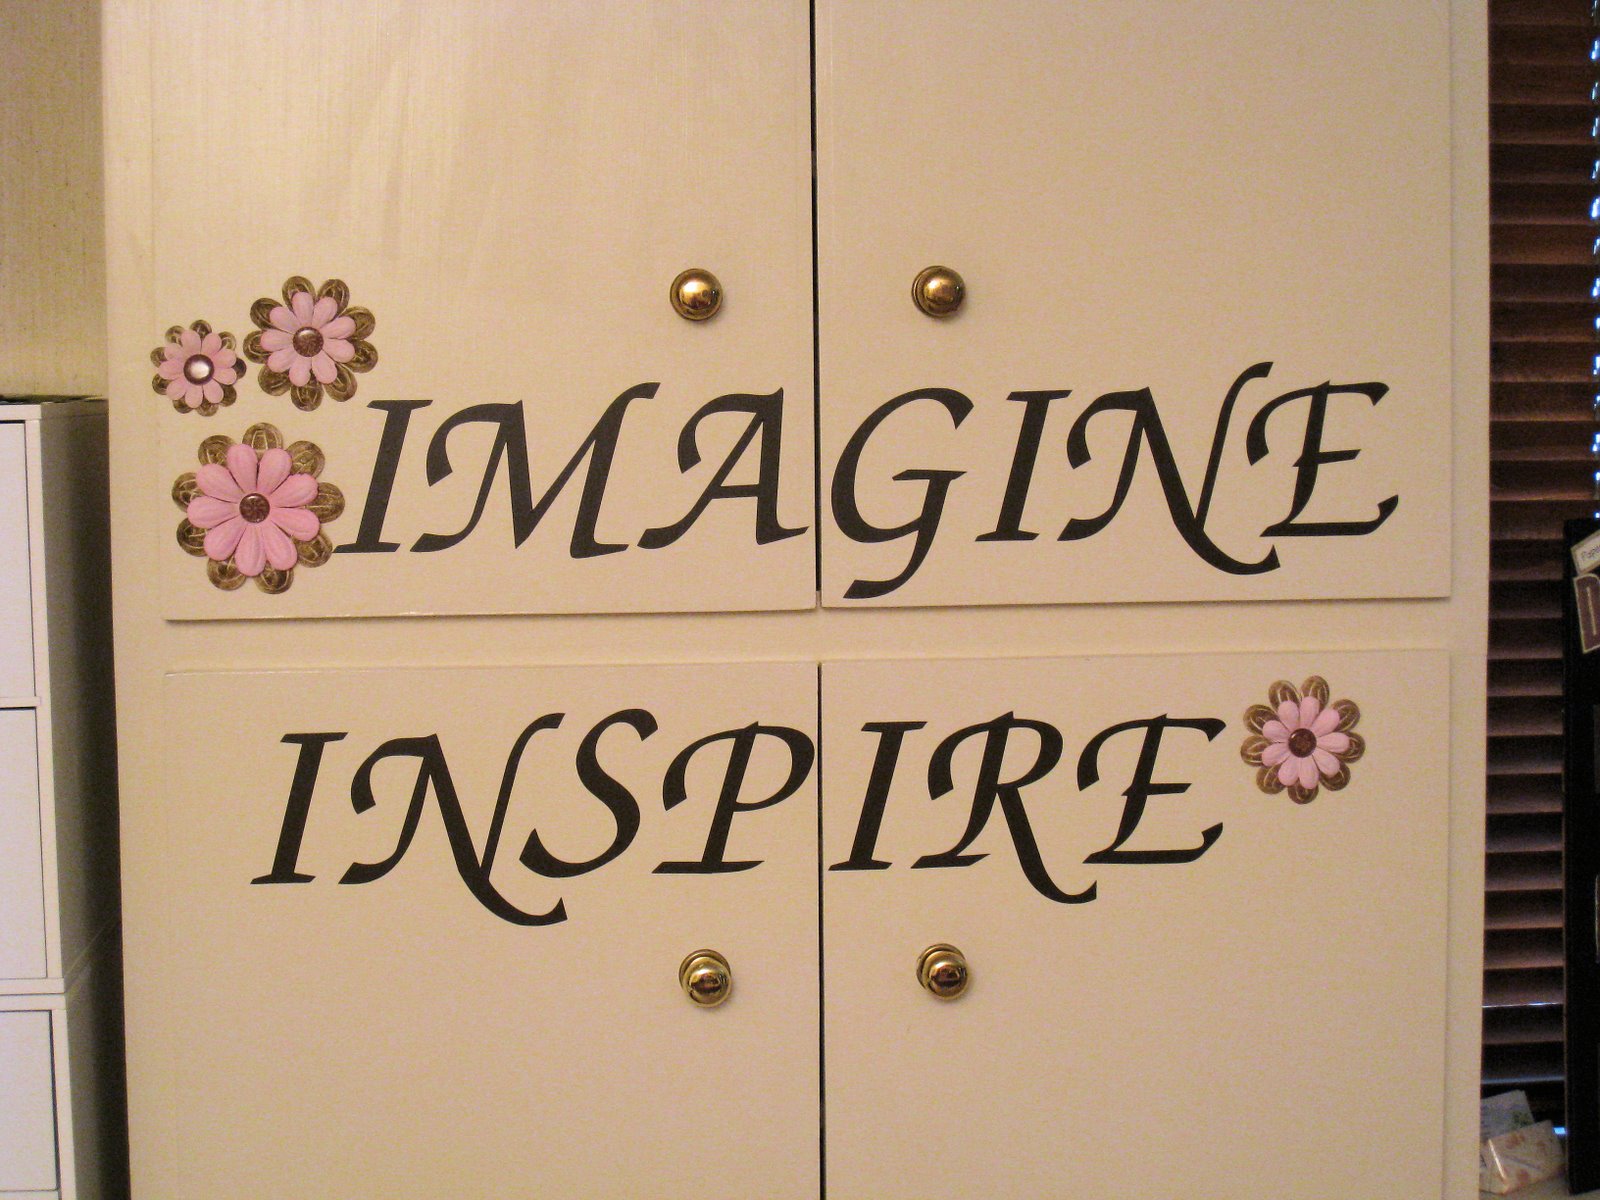 [imagine+inspire.jpg]